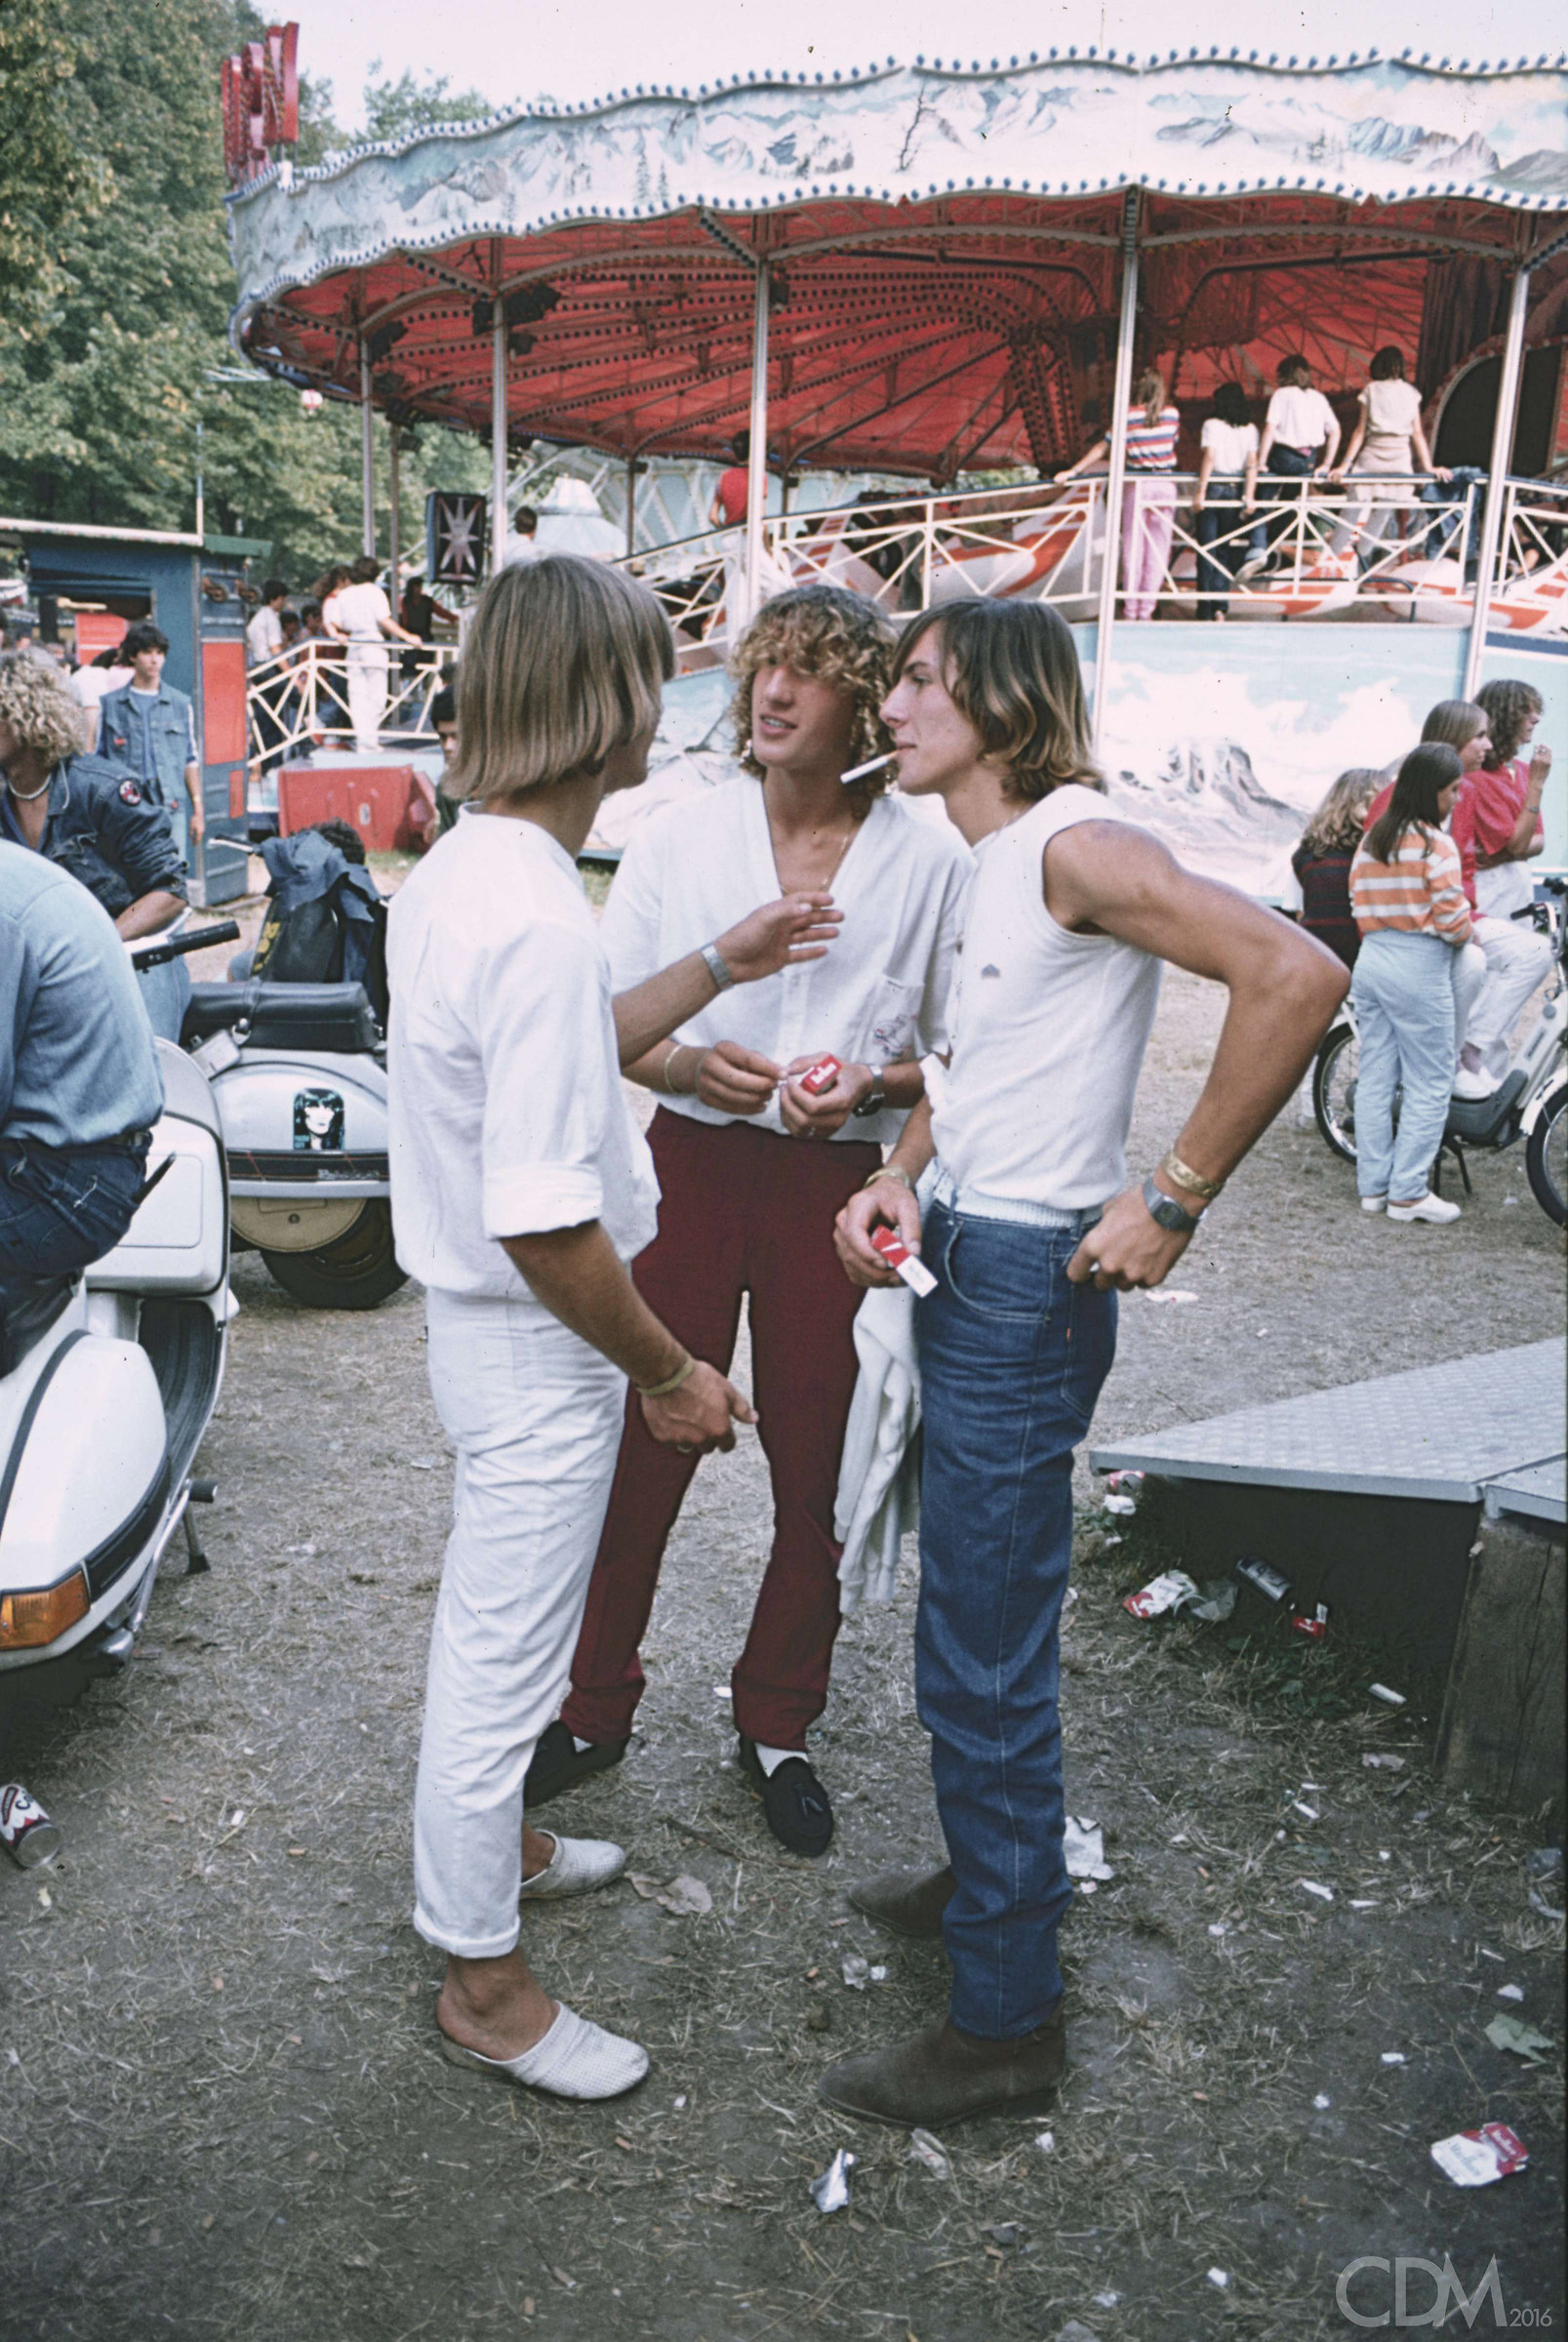 1980 at the rides...